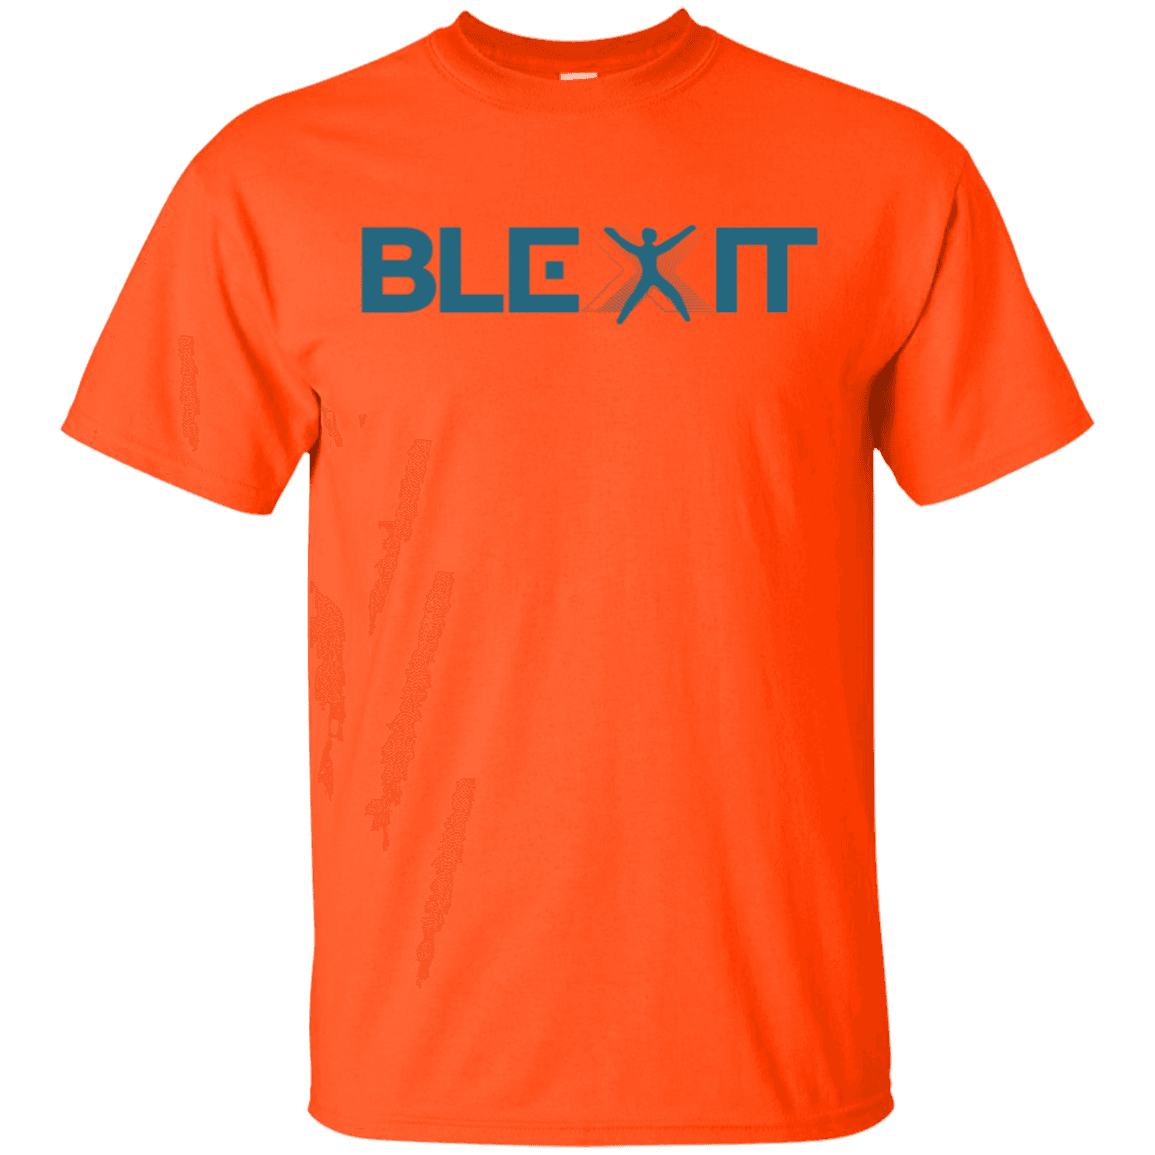 A BLEXIT t-shirt. (allbluea.com)